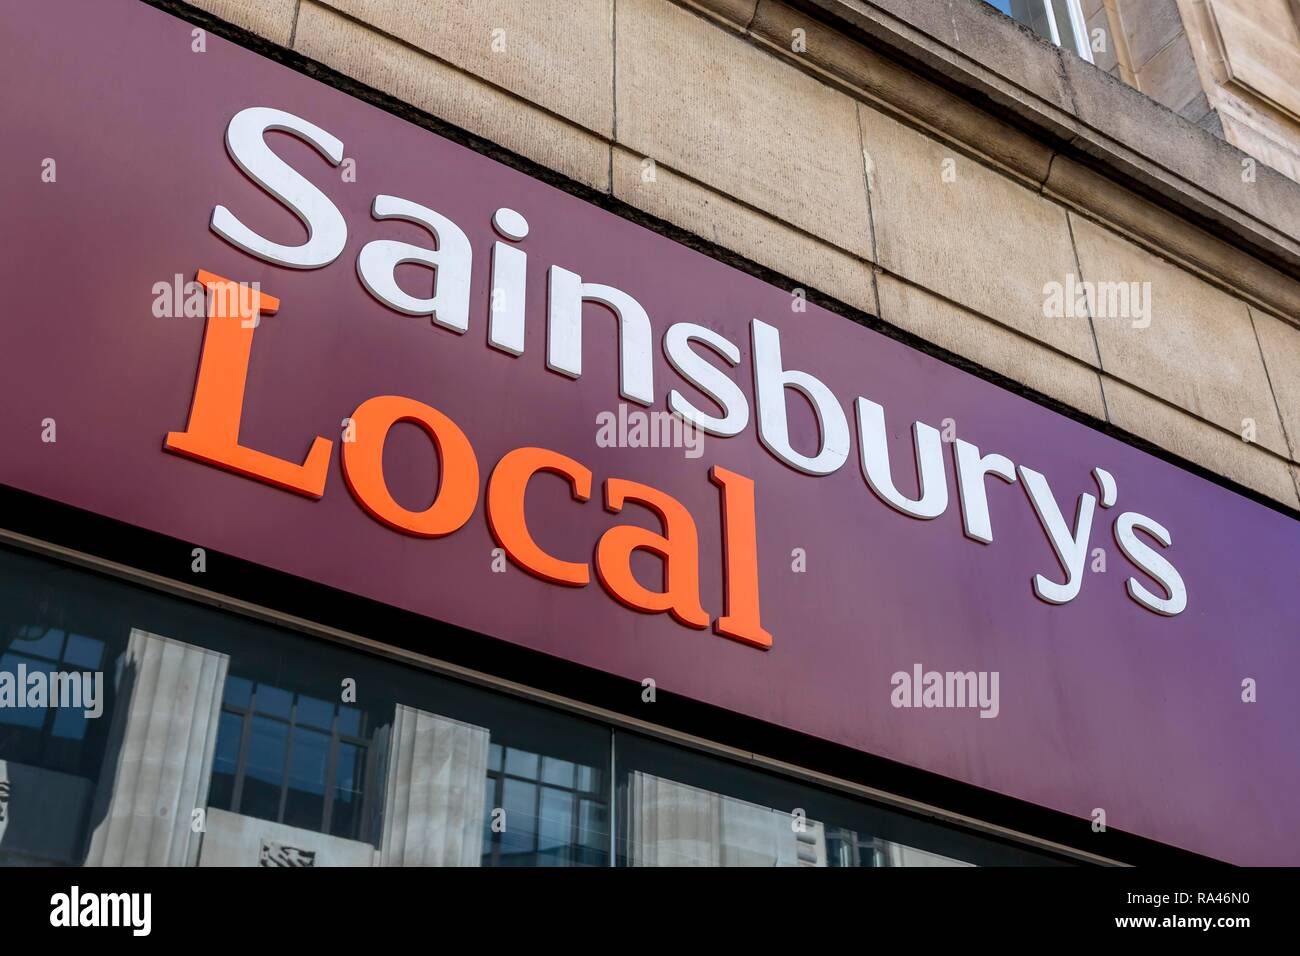 Sainsbury's catena di supermercati, logo sulla facciata, London, Regno Unito Foto Stock